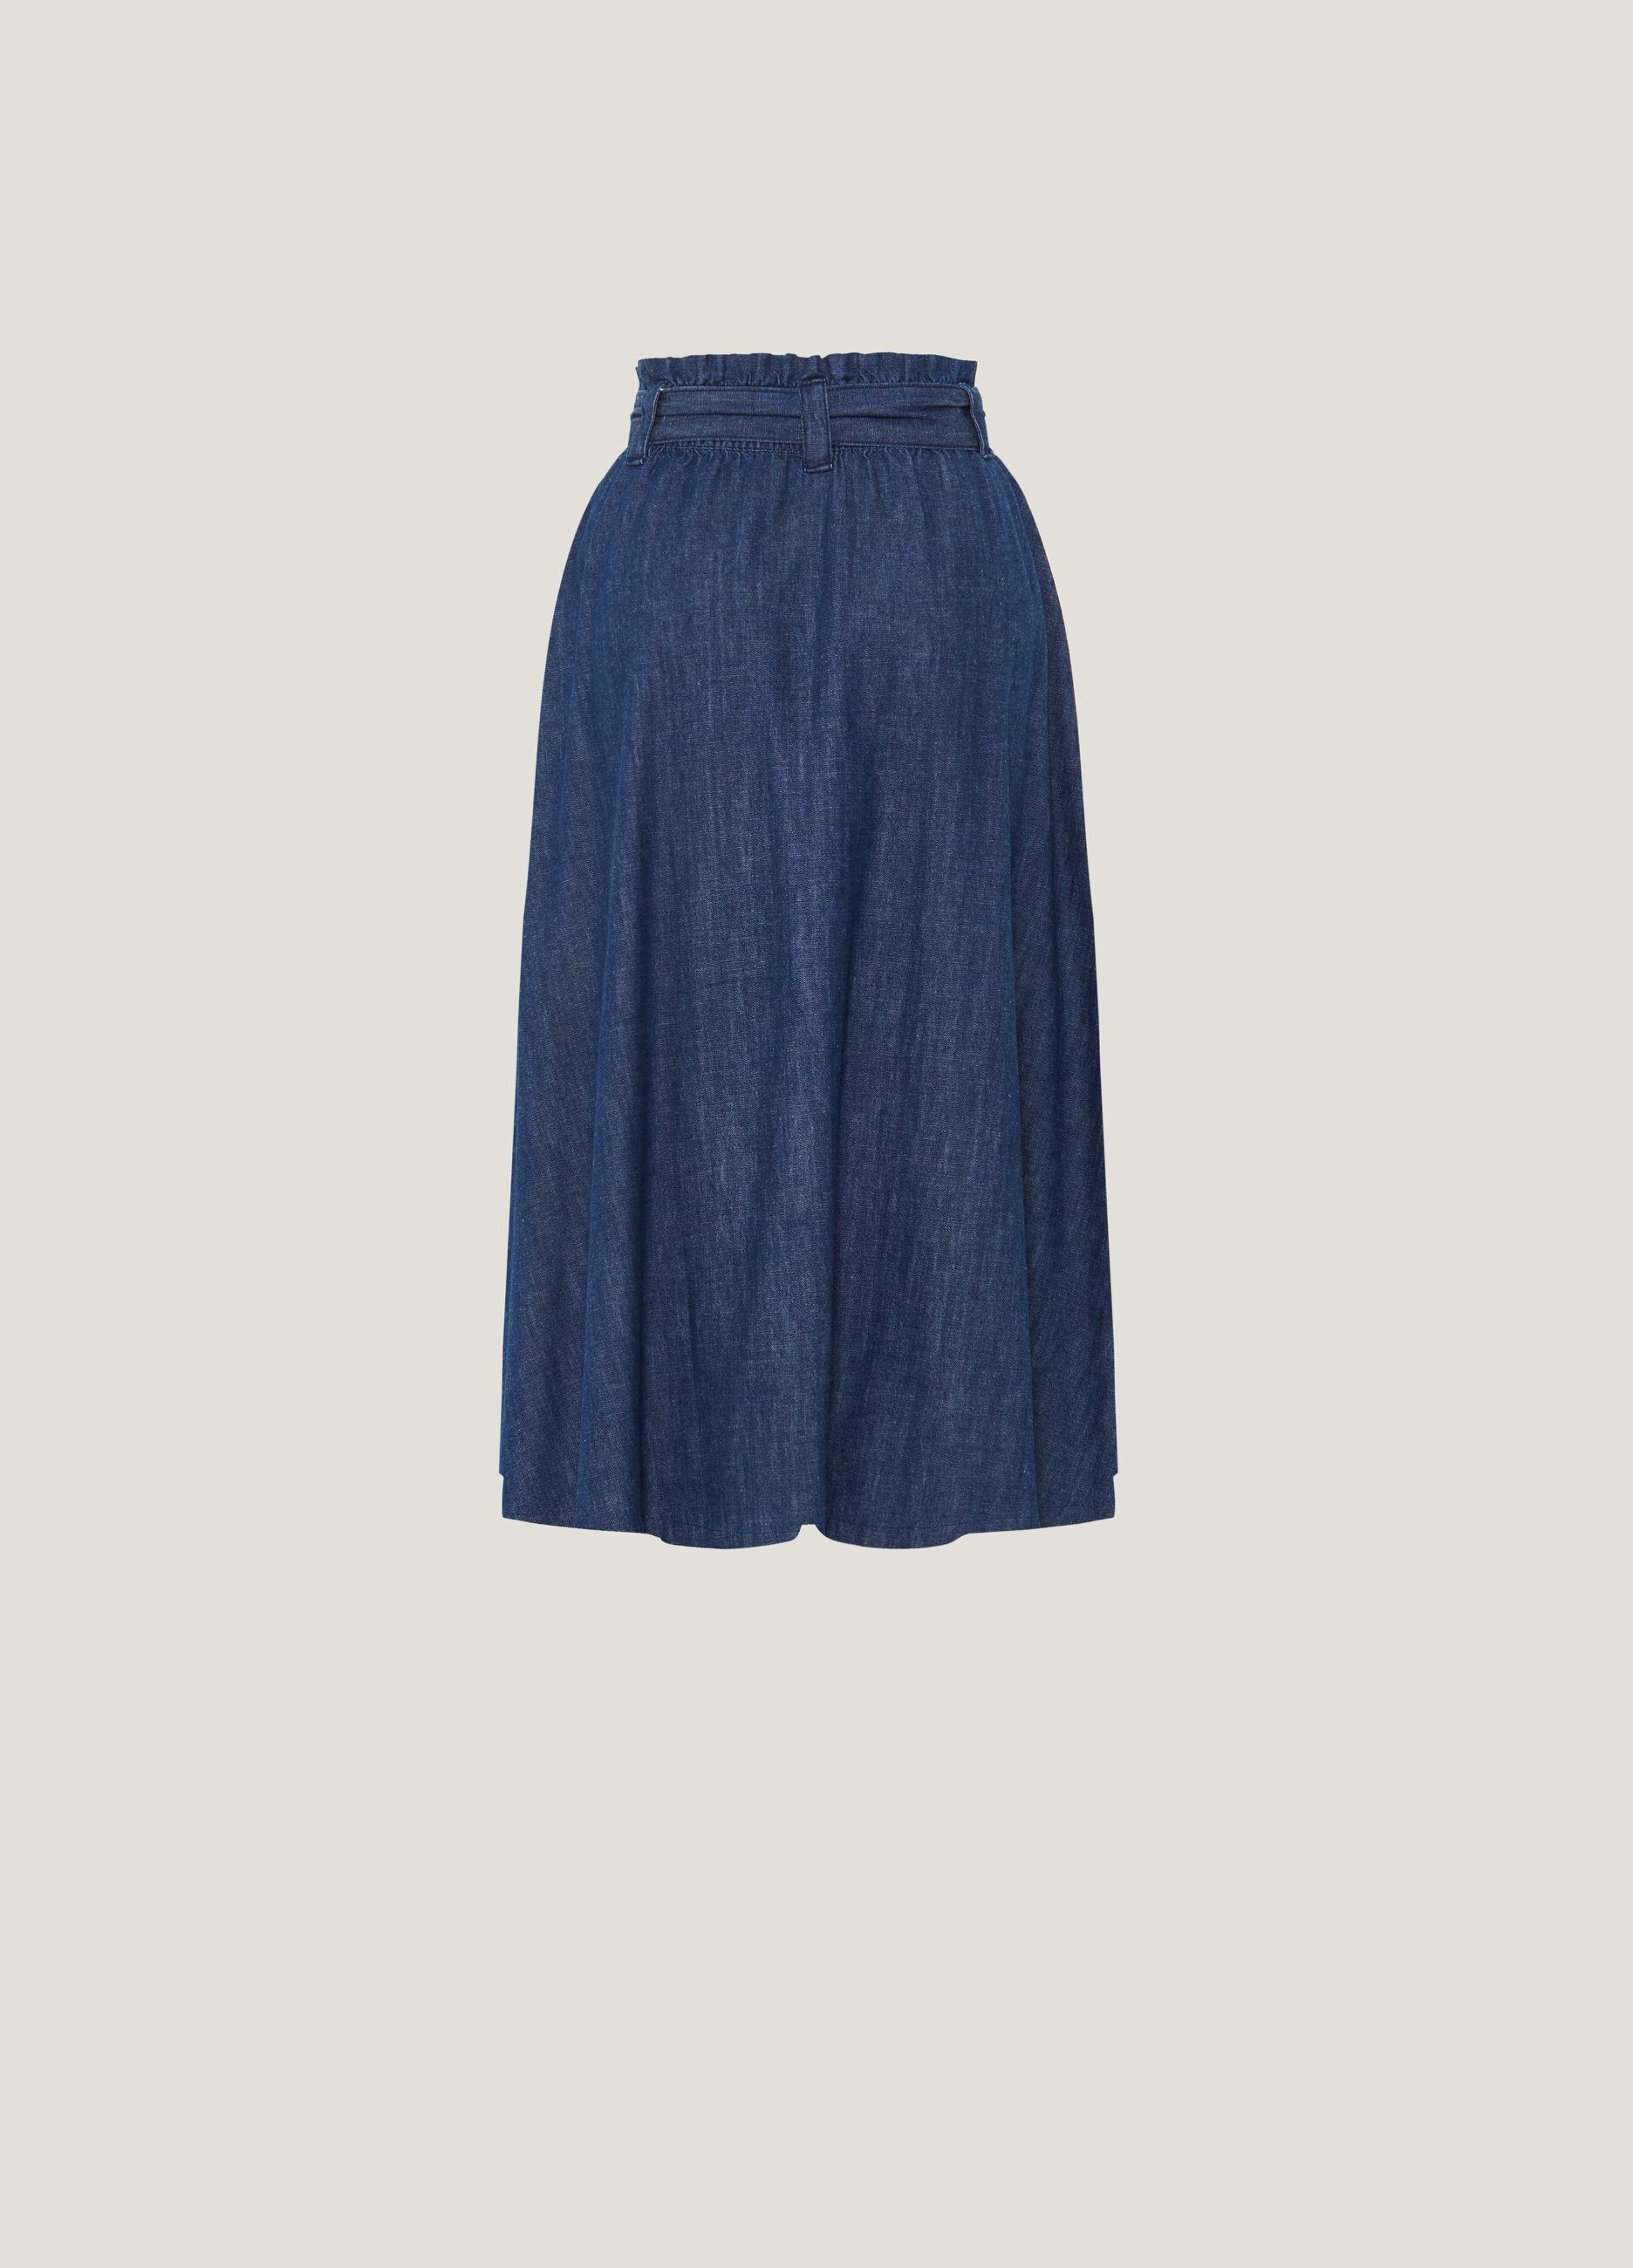 Full skirt in denim with belt_4